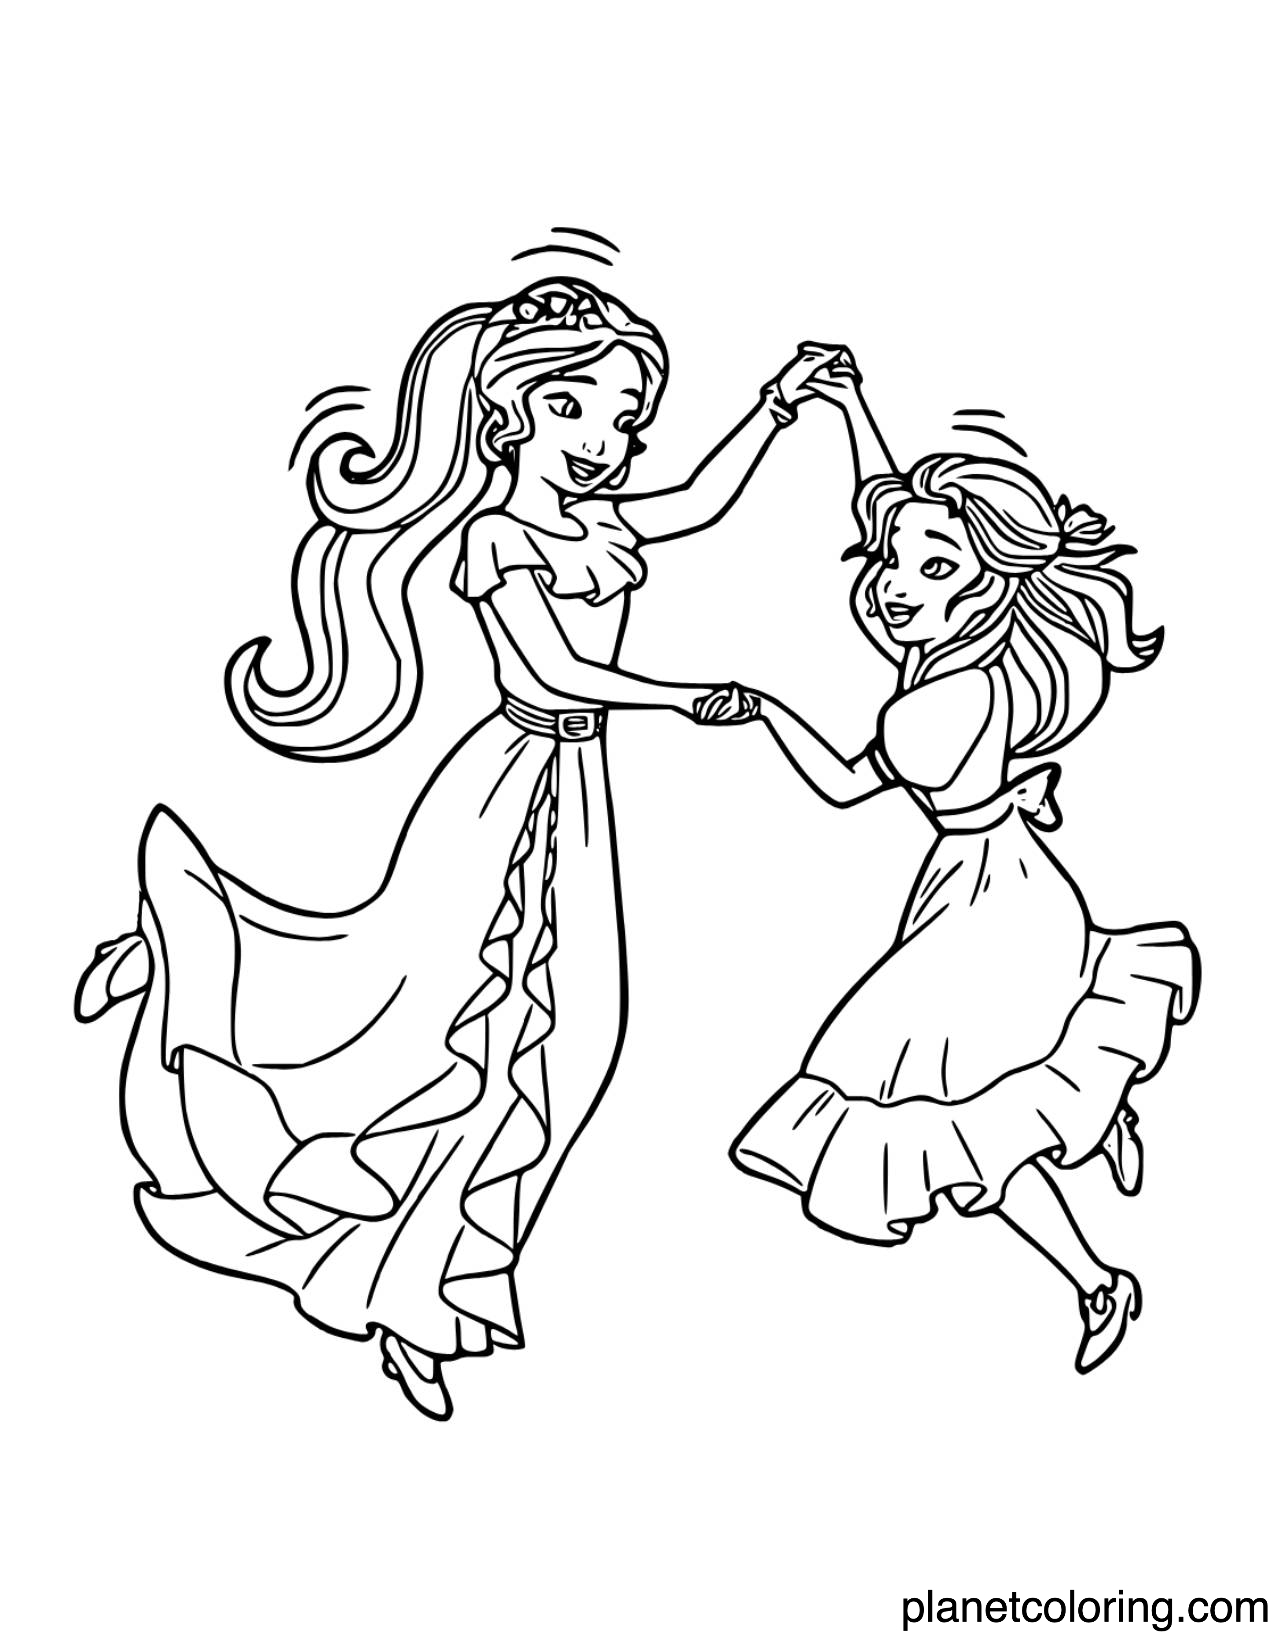 Isabel and Princess Elena dancing